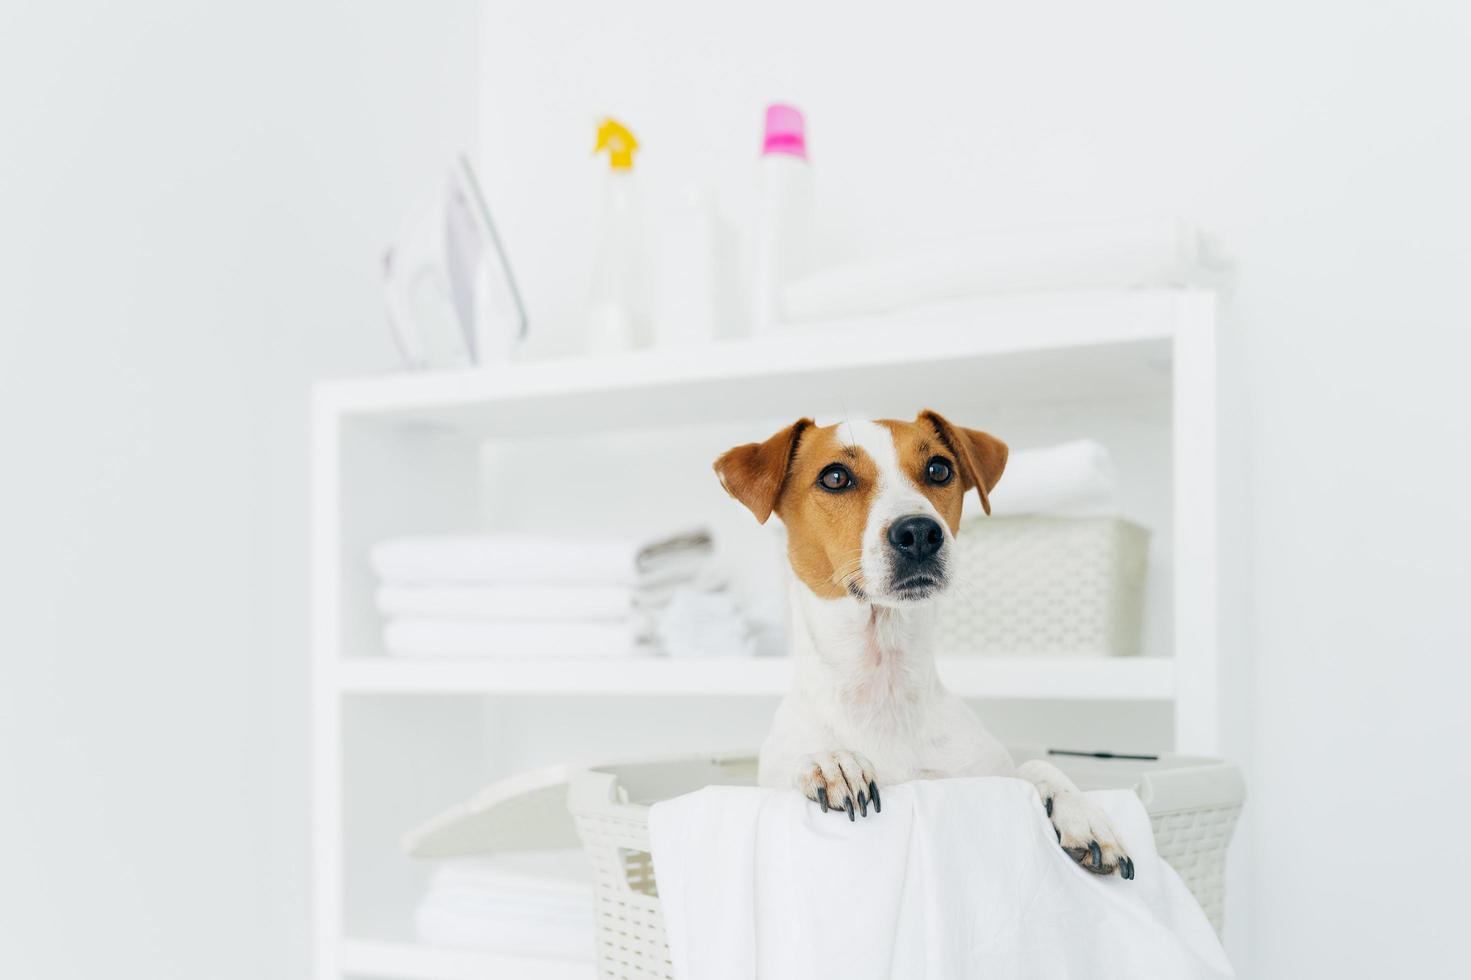 toma interior de un perro pedigrí en una cesta de lavandería con sábanas blancas en el baño, consola con toallas dobladas, plancha y detergentes en segundo plano foto